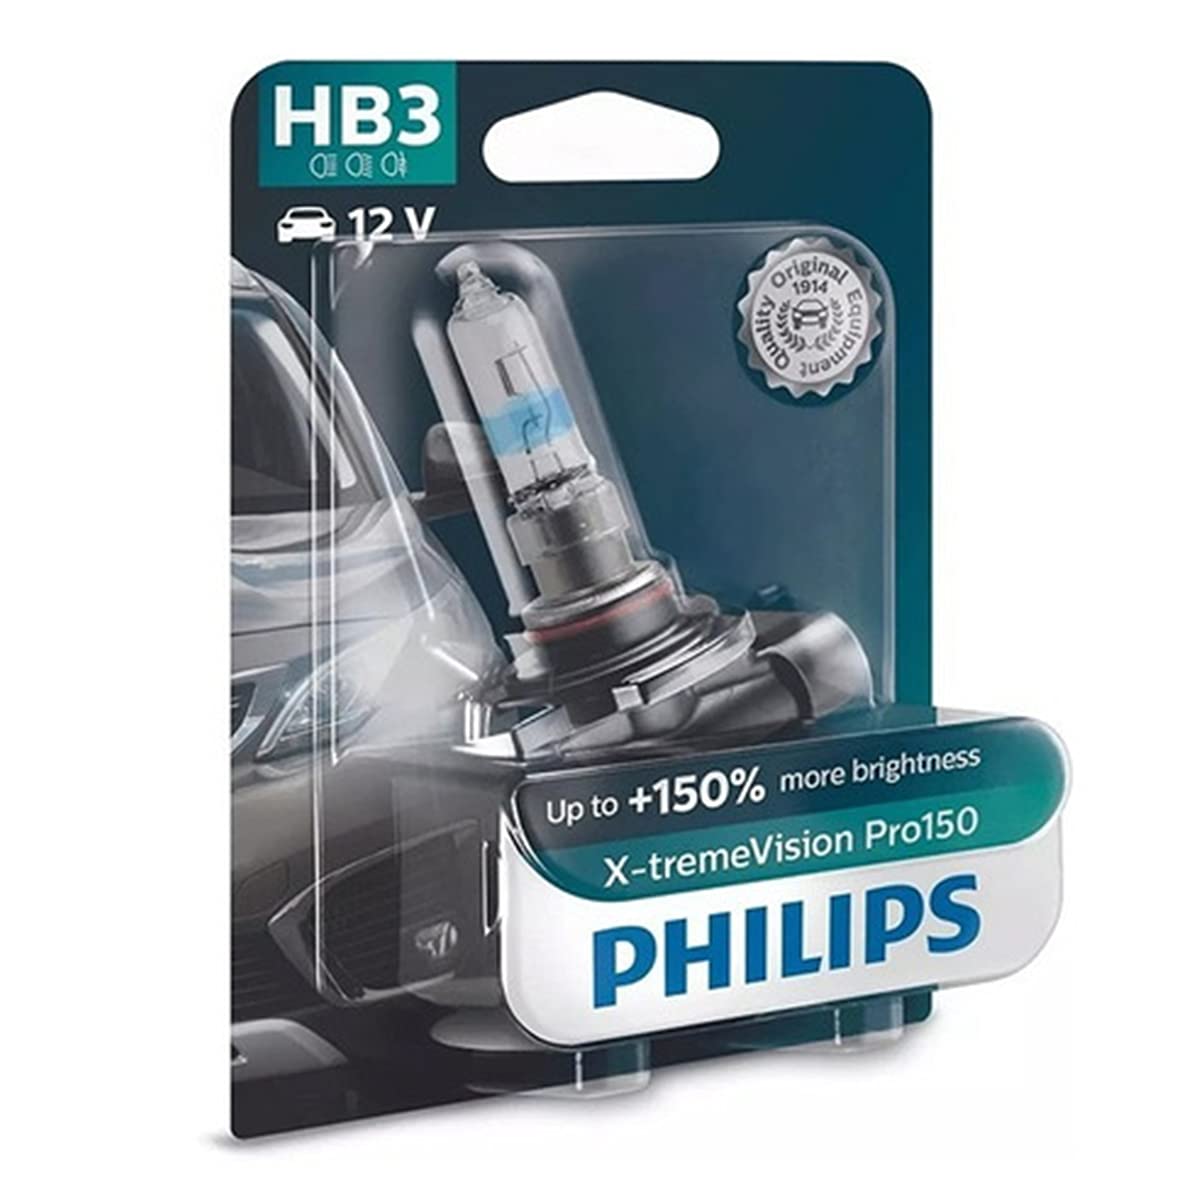 Philips automotive lighting X-tremeVision Pro150 HB3 Scheinwerferlampe +150%, Einzelblister, 557128, weiss, Single blister von Philips automotive lighting